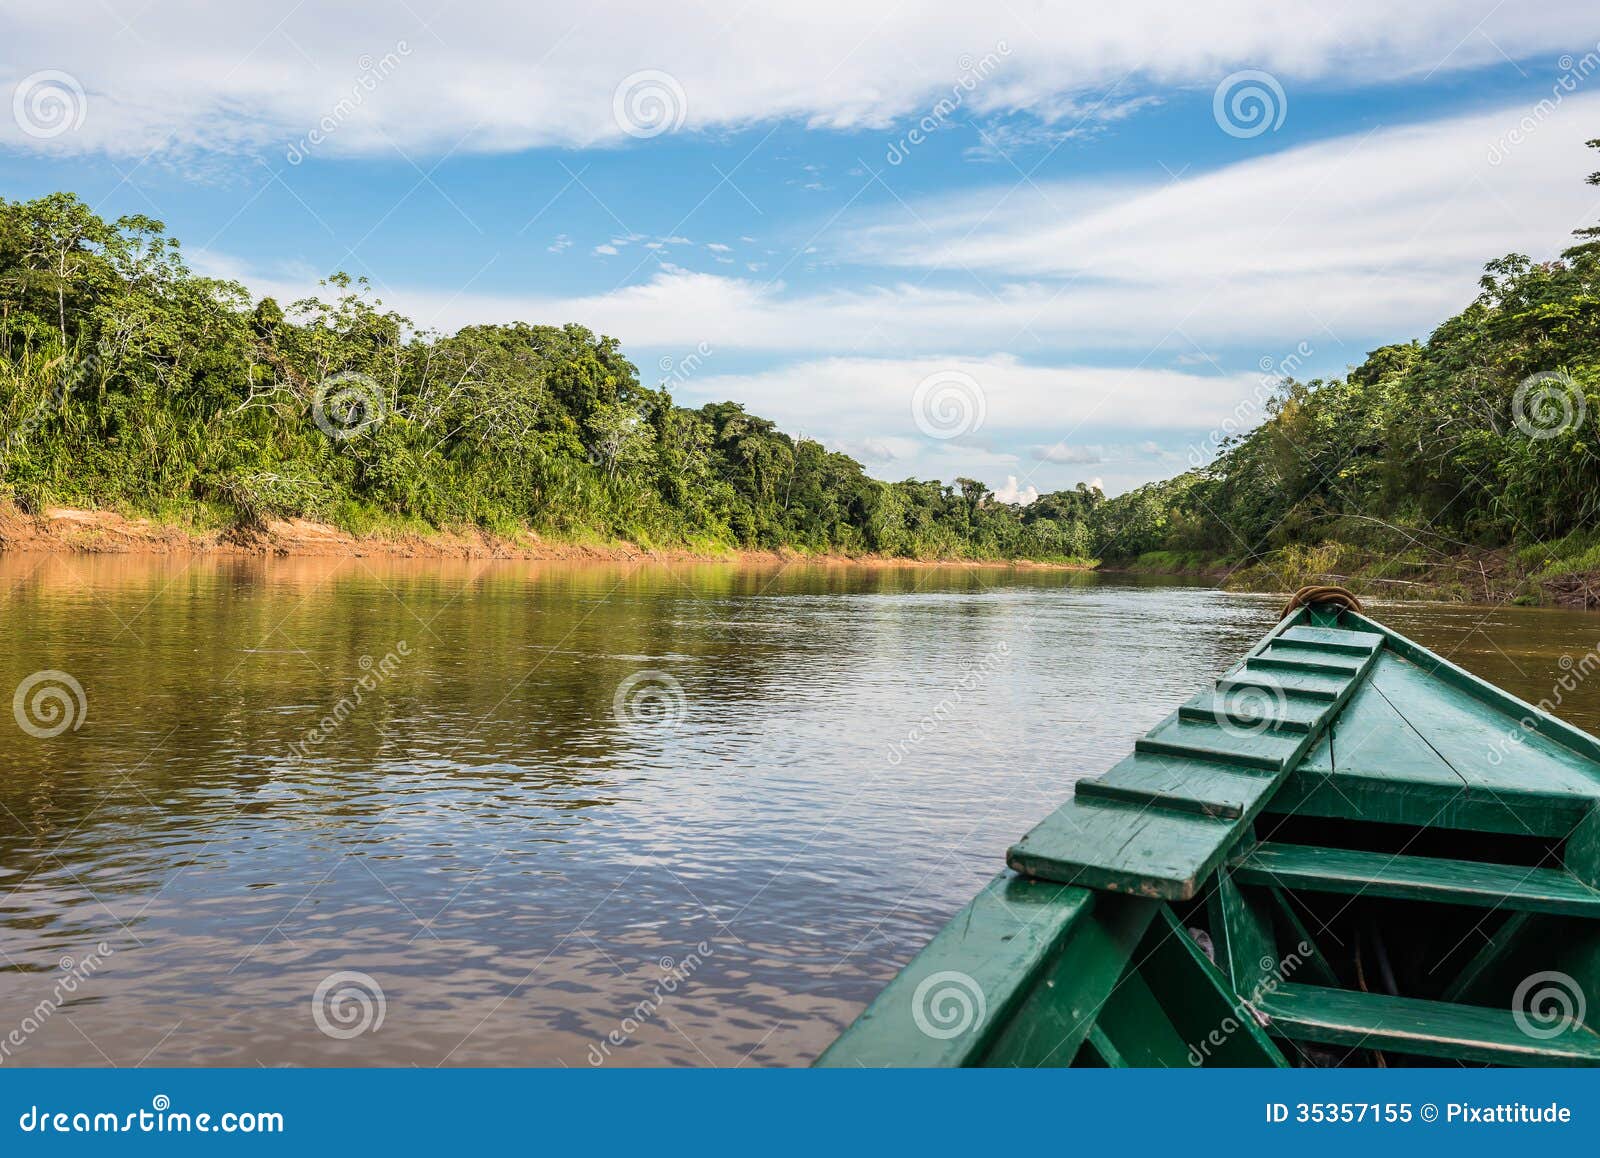 boat in the river in the peruvian amazon jungle at madre de dios peru